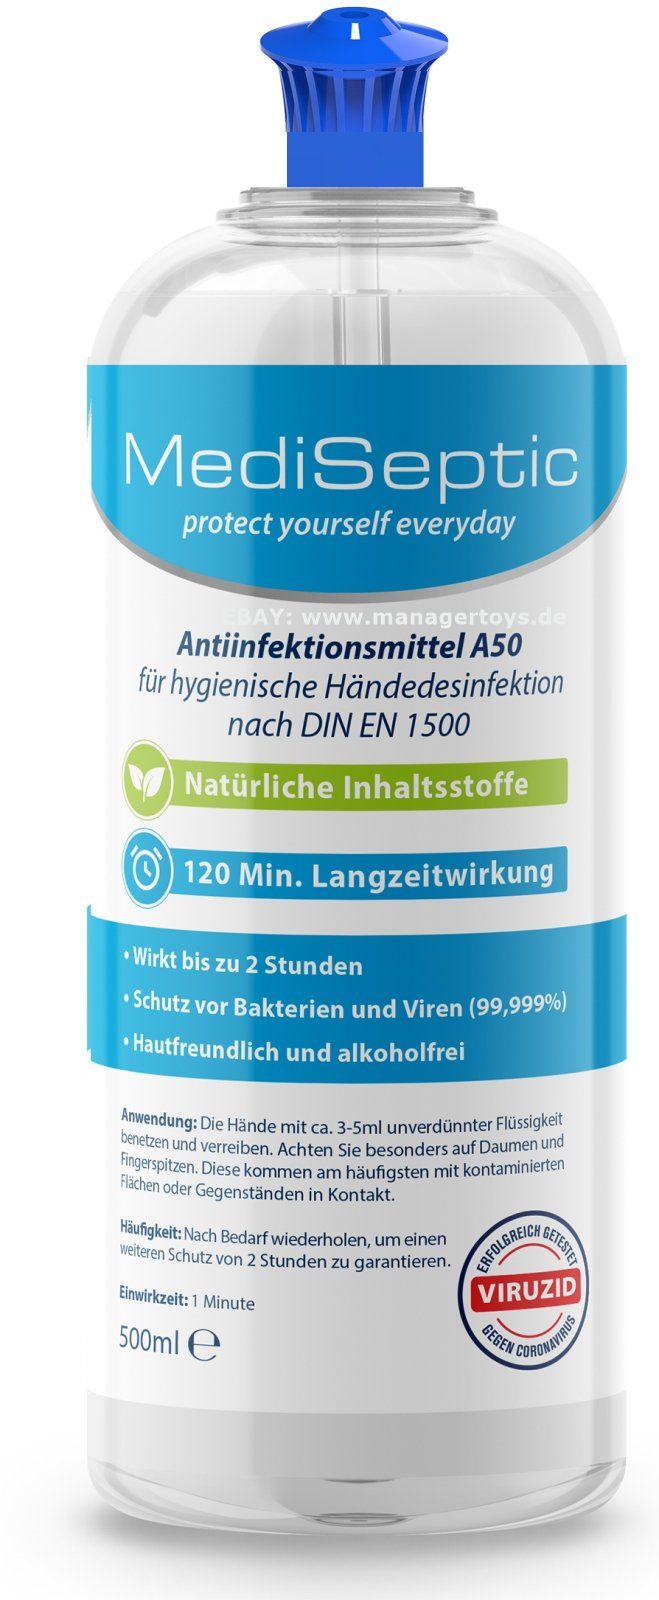 MediSeptic Hautcreme MediSeptic Antiinfektionsmittel 99,9% Hände h ml 2 500 zur Schutz, Anti-Infektion Desinfektion Desinfektion zusätzlich Hand